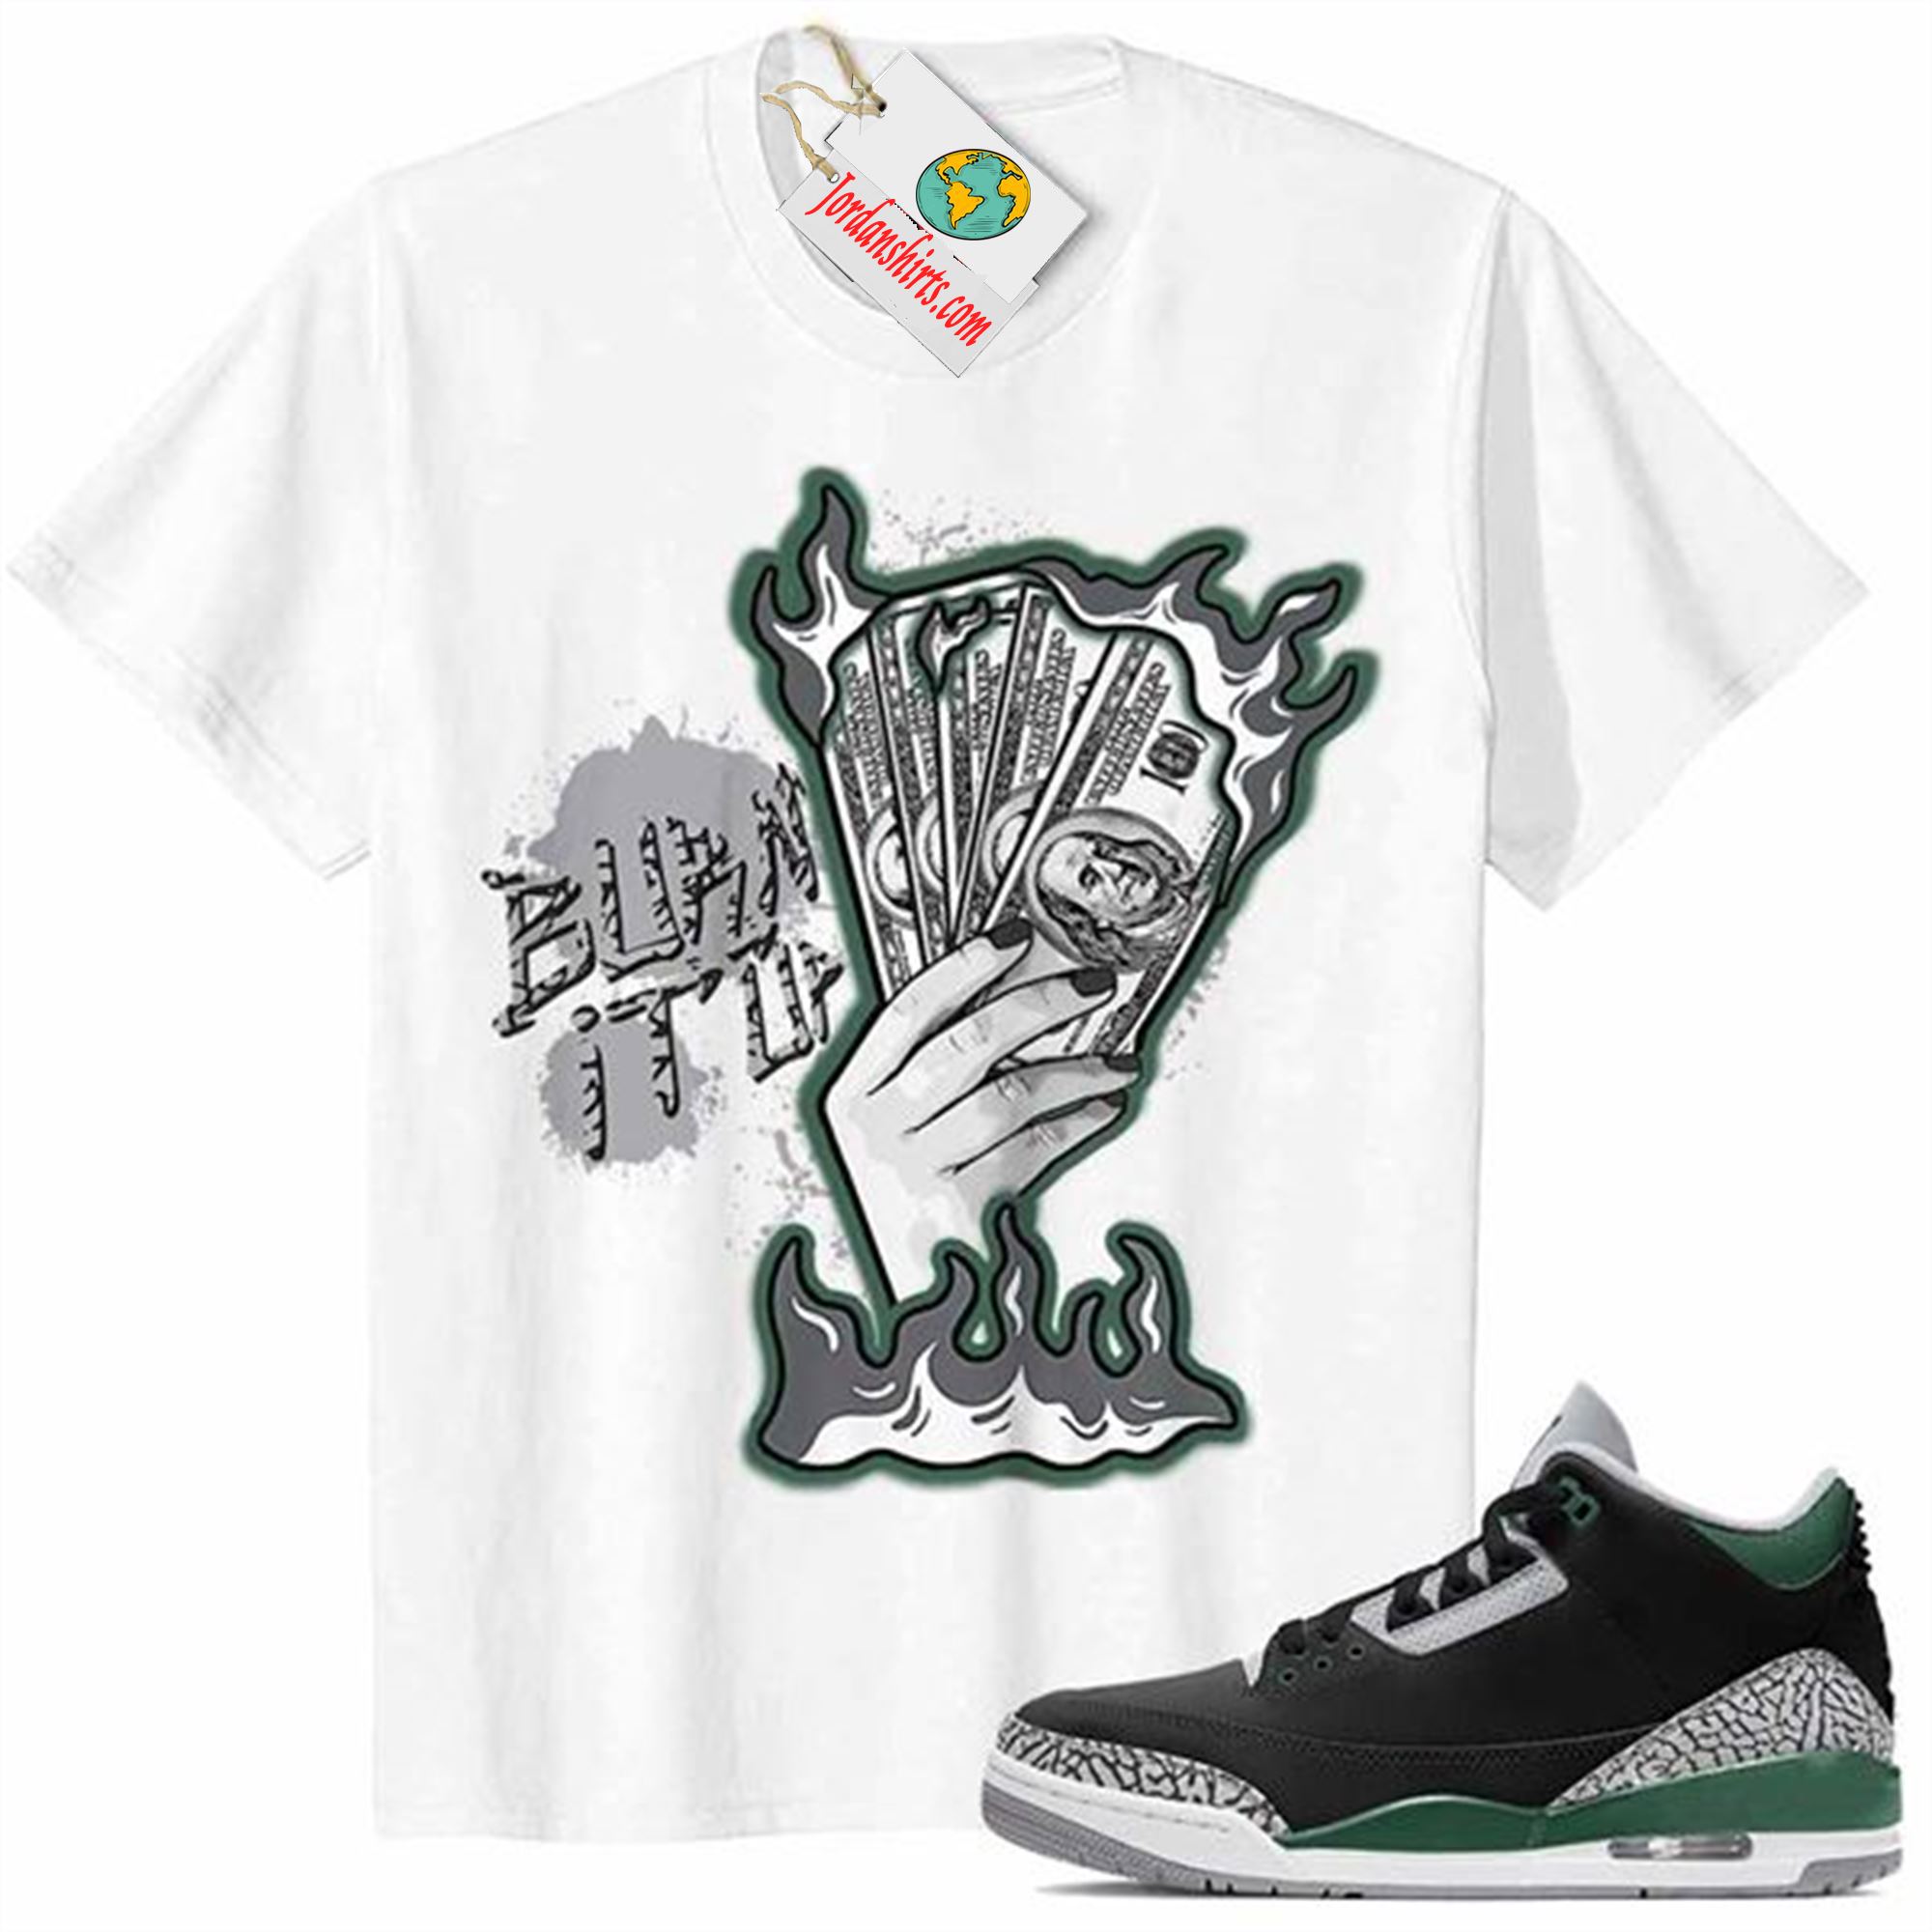 Jordan 3 Shirt, Burn It Up White Air Jordan 3 Pine Green 3s Size Up To 5xl